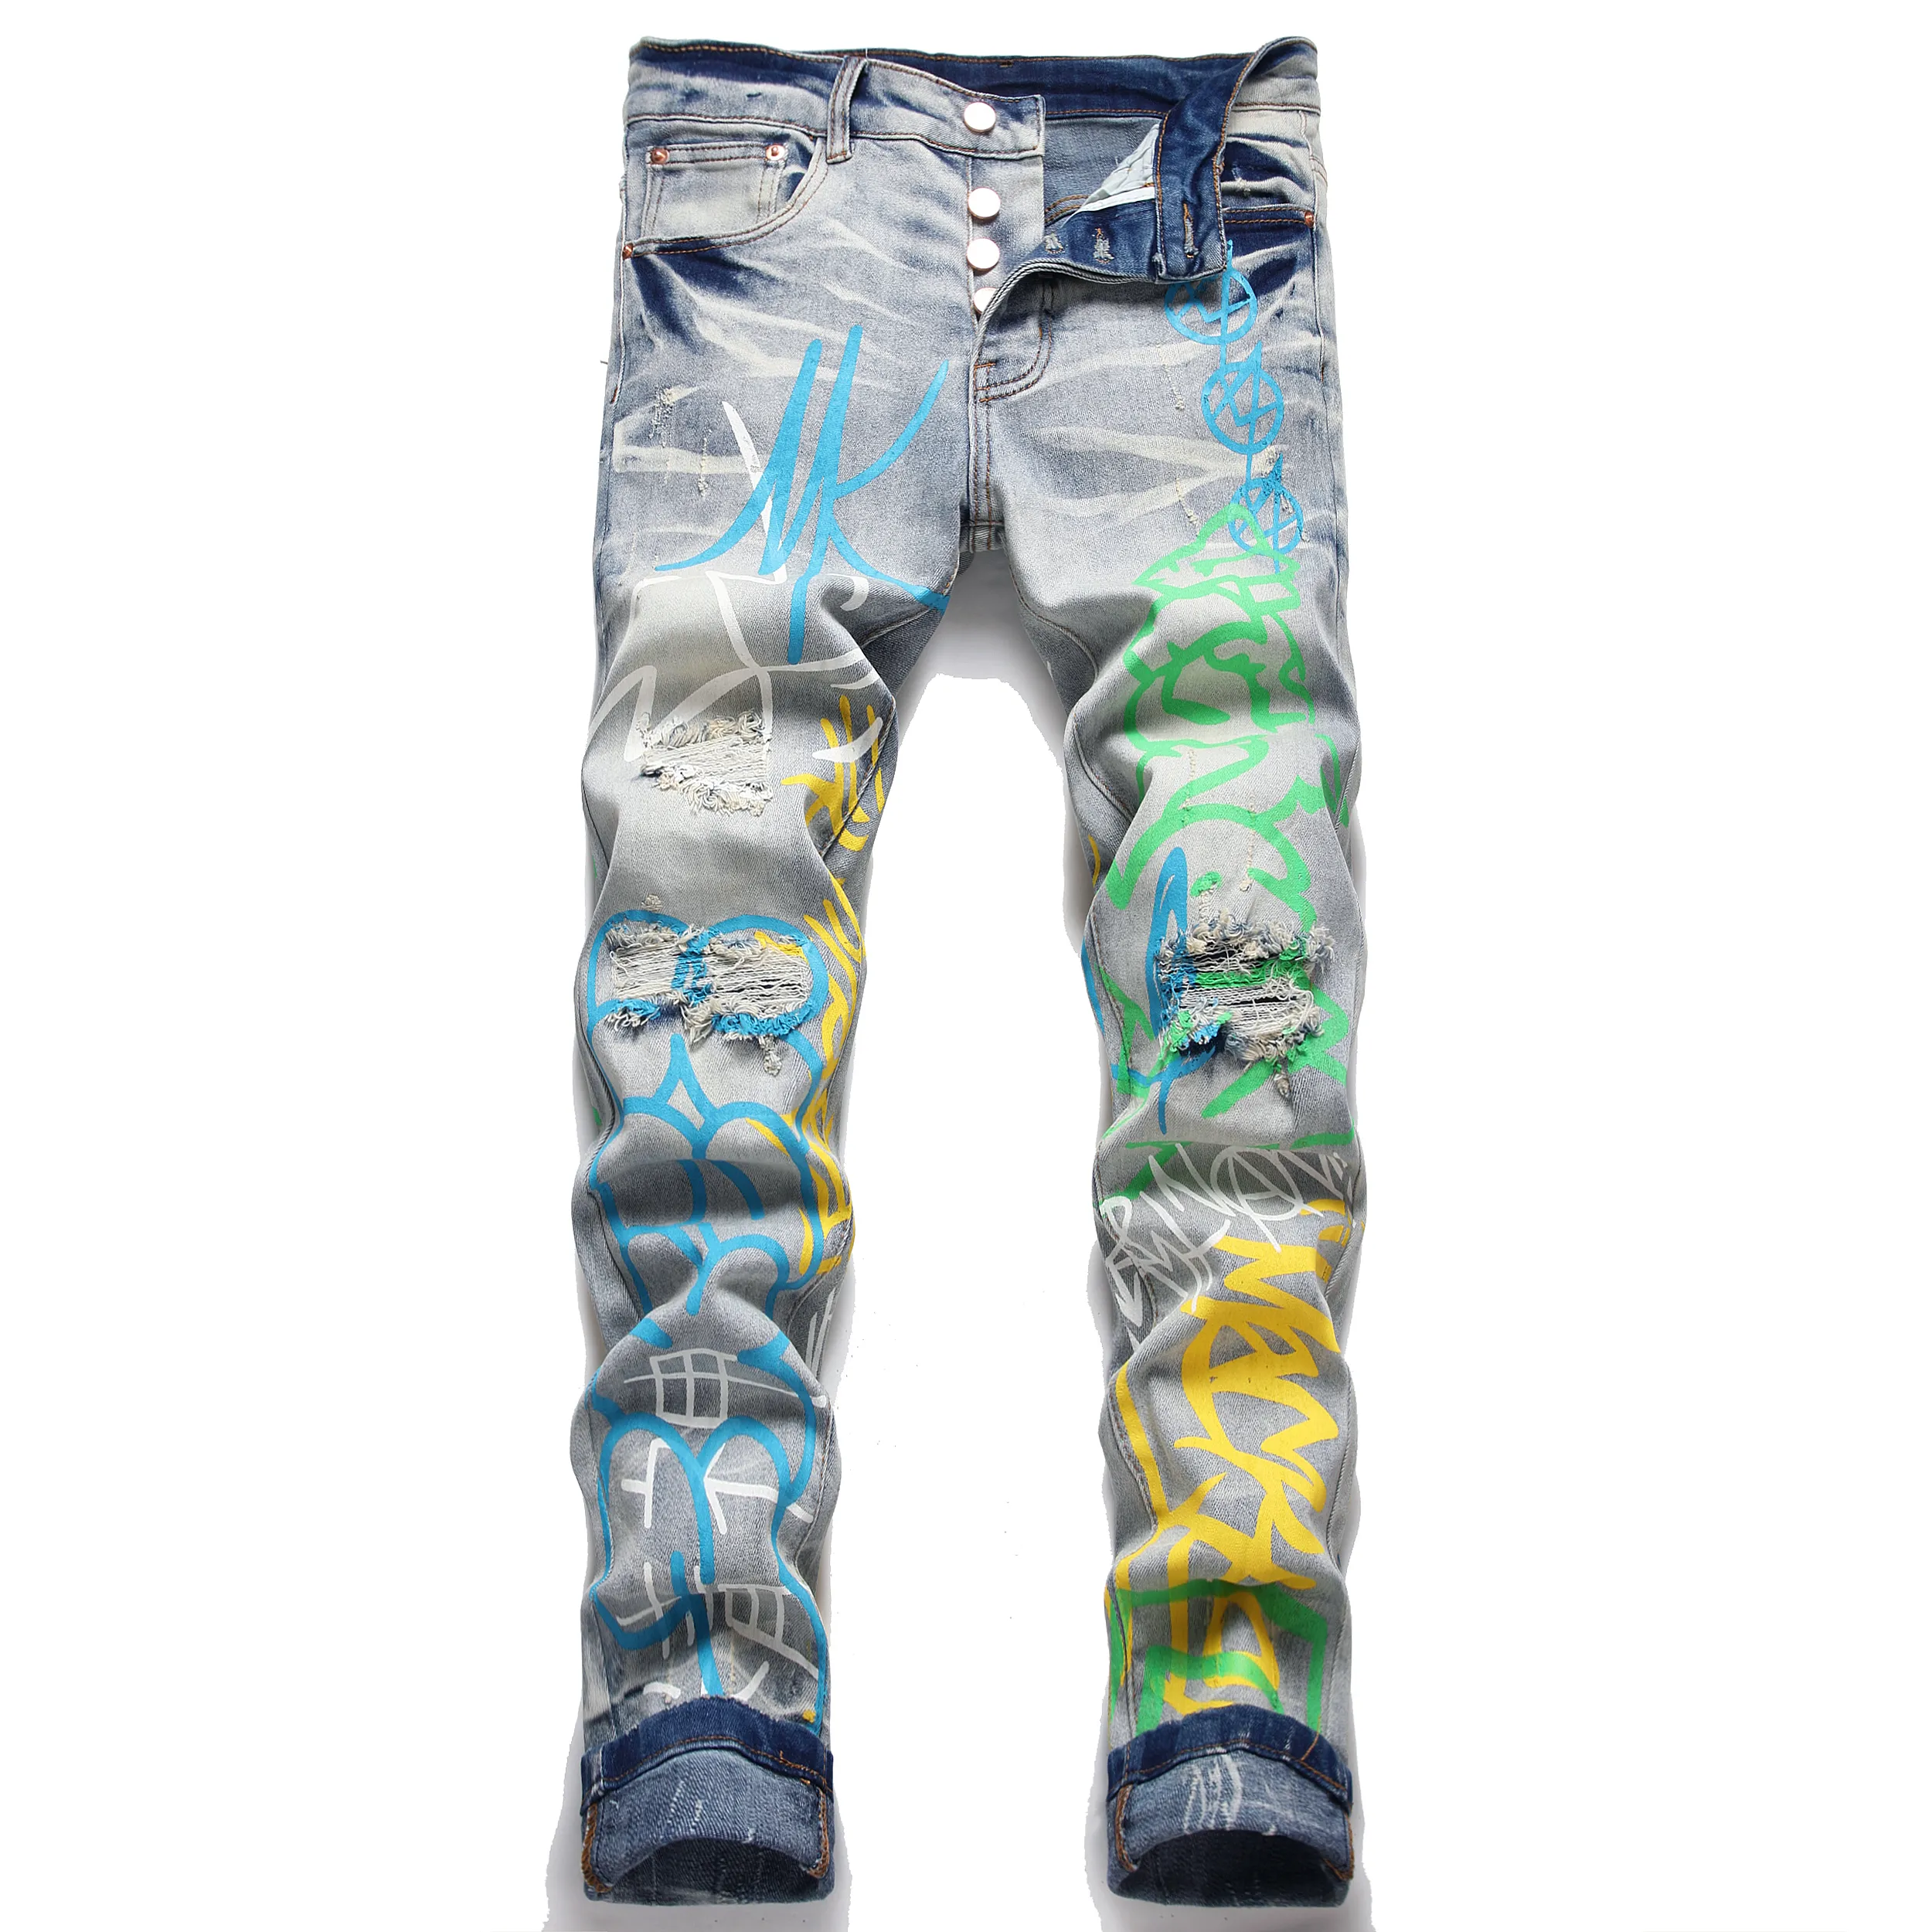 Jeans Männer Slim Fit Ripped Graffiti bedruckt gerade Biker -Denimhose große Größe hellblaue Herren Hüfthopfenhosen für männlich